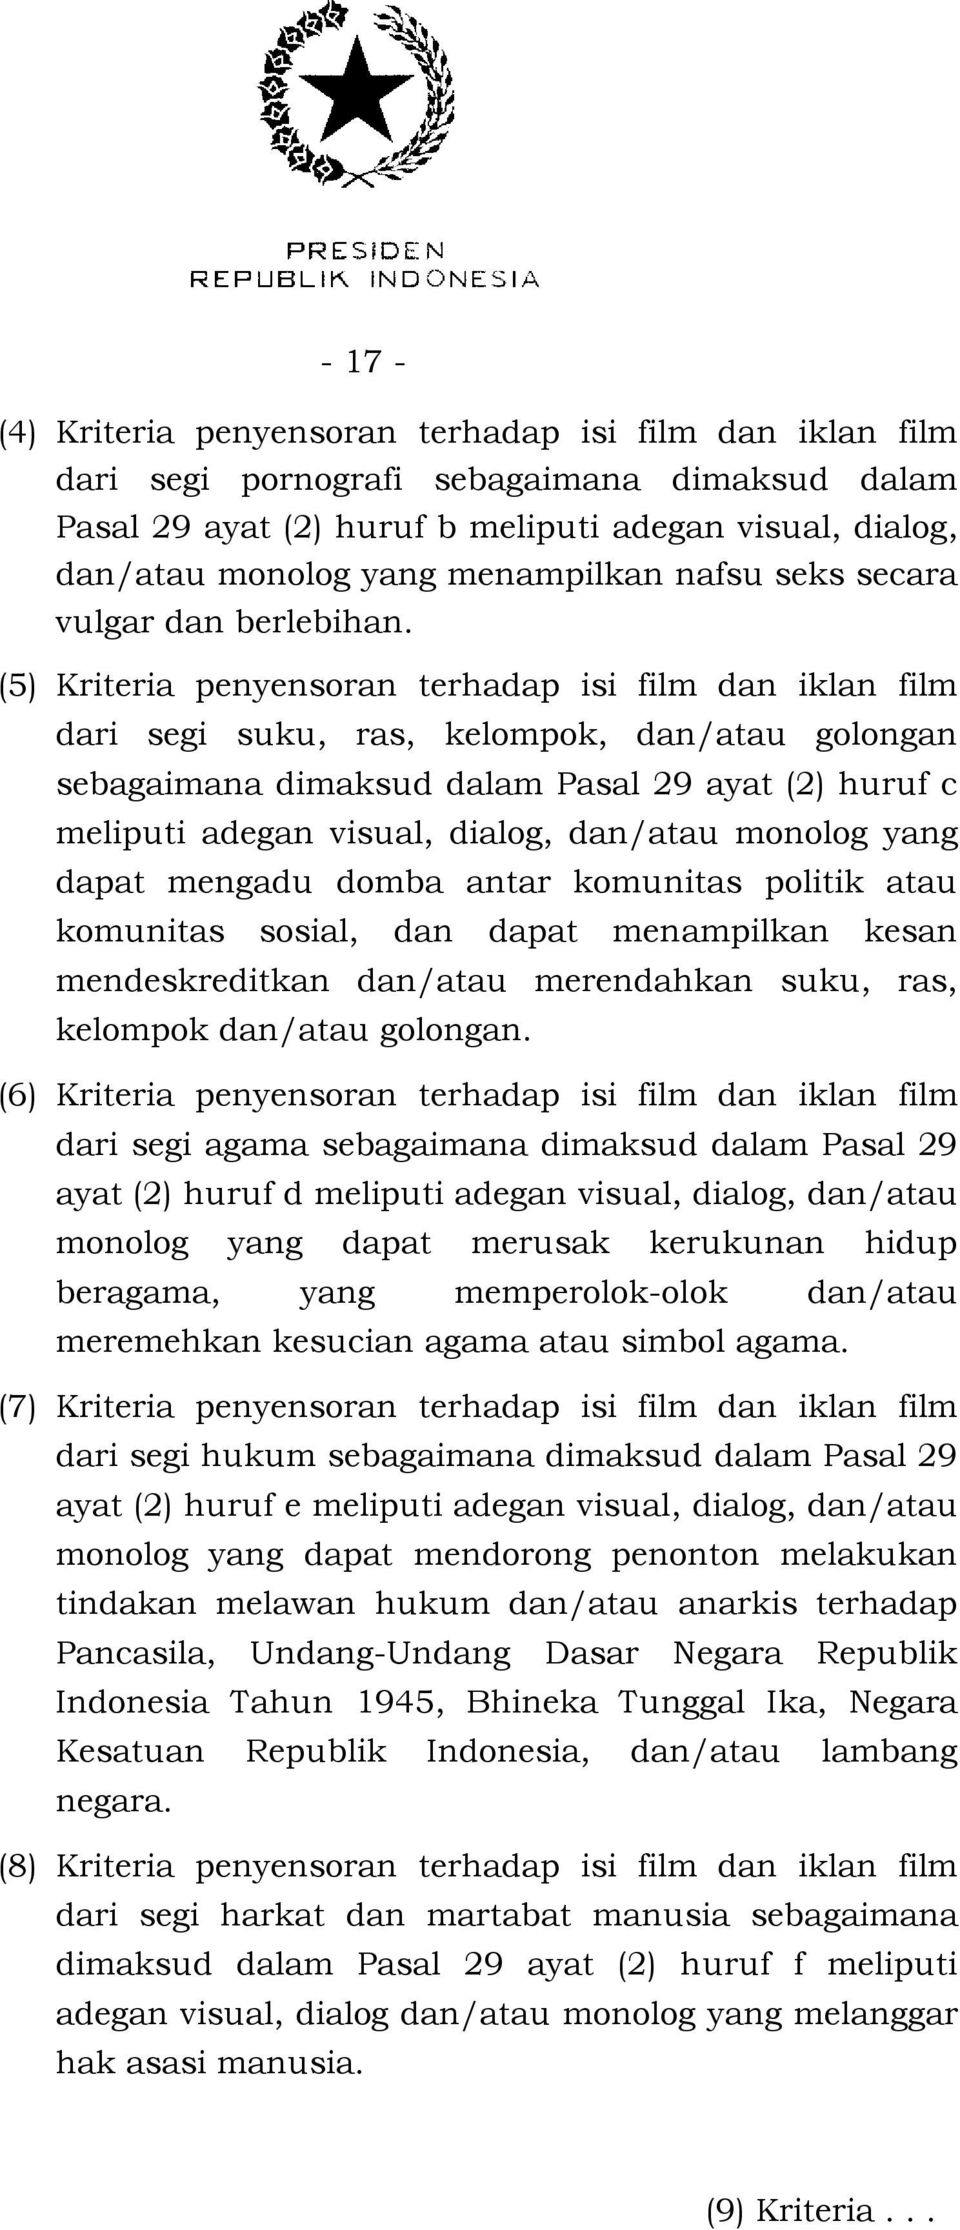 (5) Kriteria penyensoran terhadap isi film dan iklan film dari segi suku, ras, kelompok, dan/atau golongan sebagaimana dimaksud dalam Pasal 29 ayat (2) huruf c meliputi adegan visual, dialog,